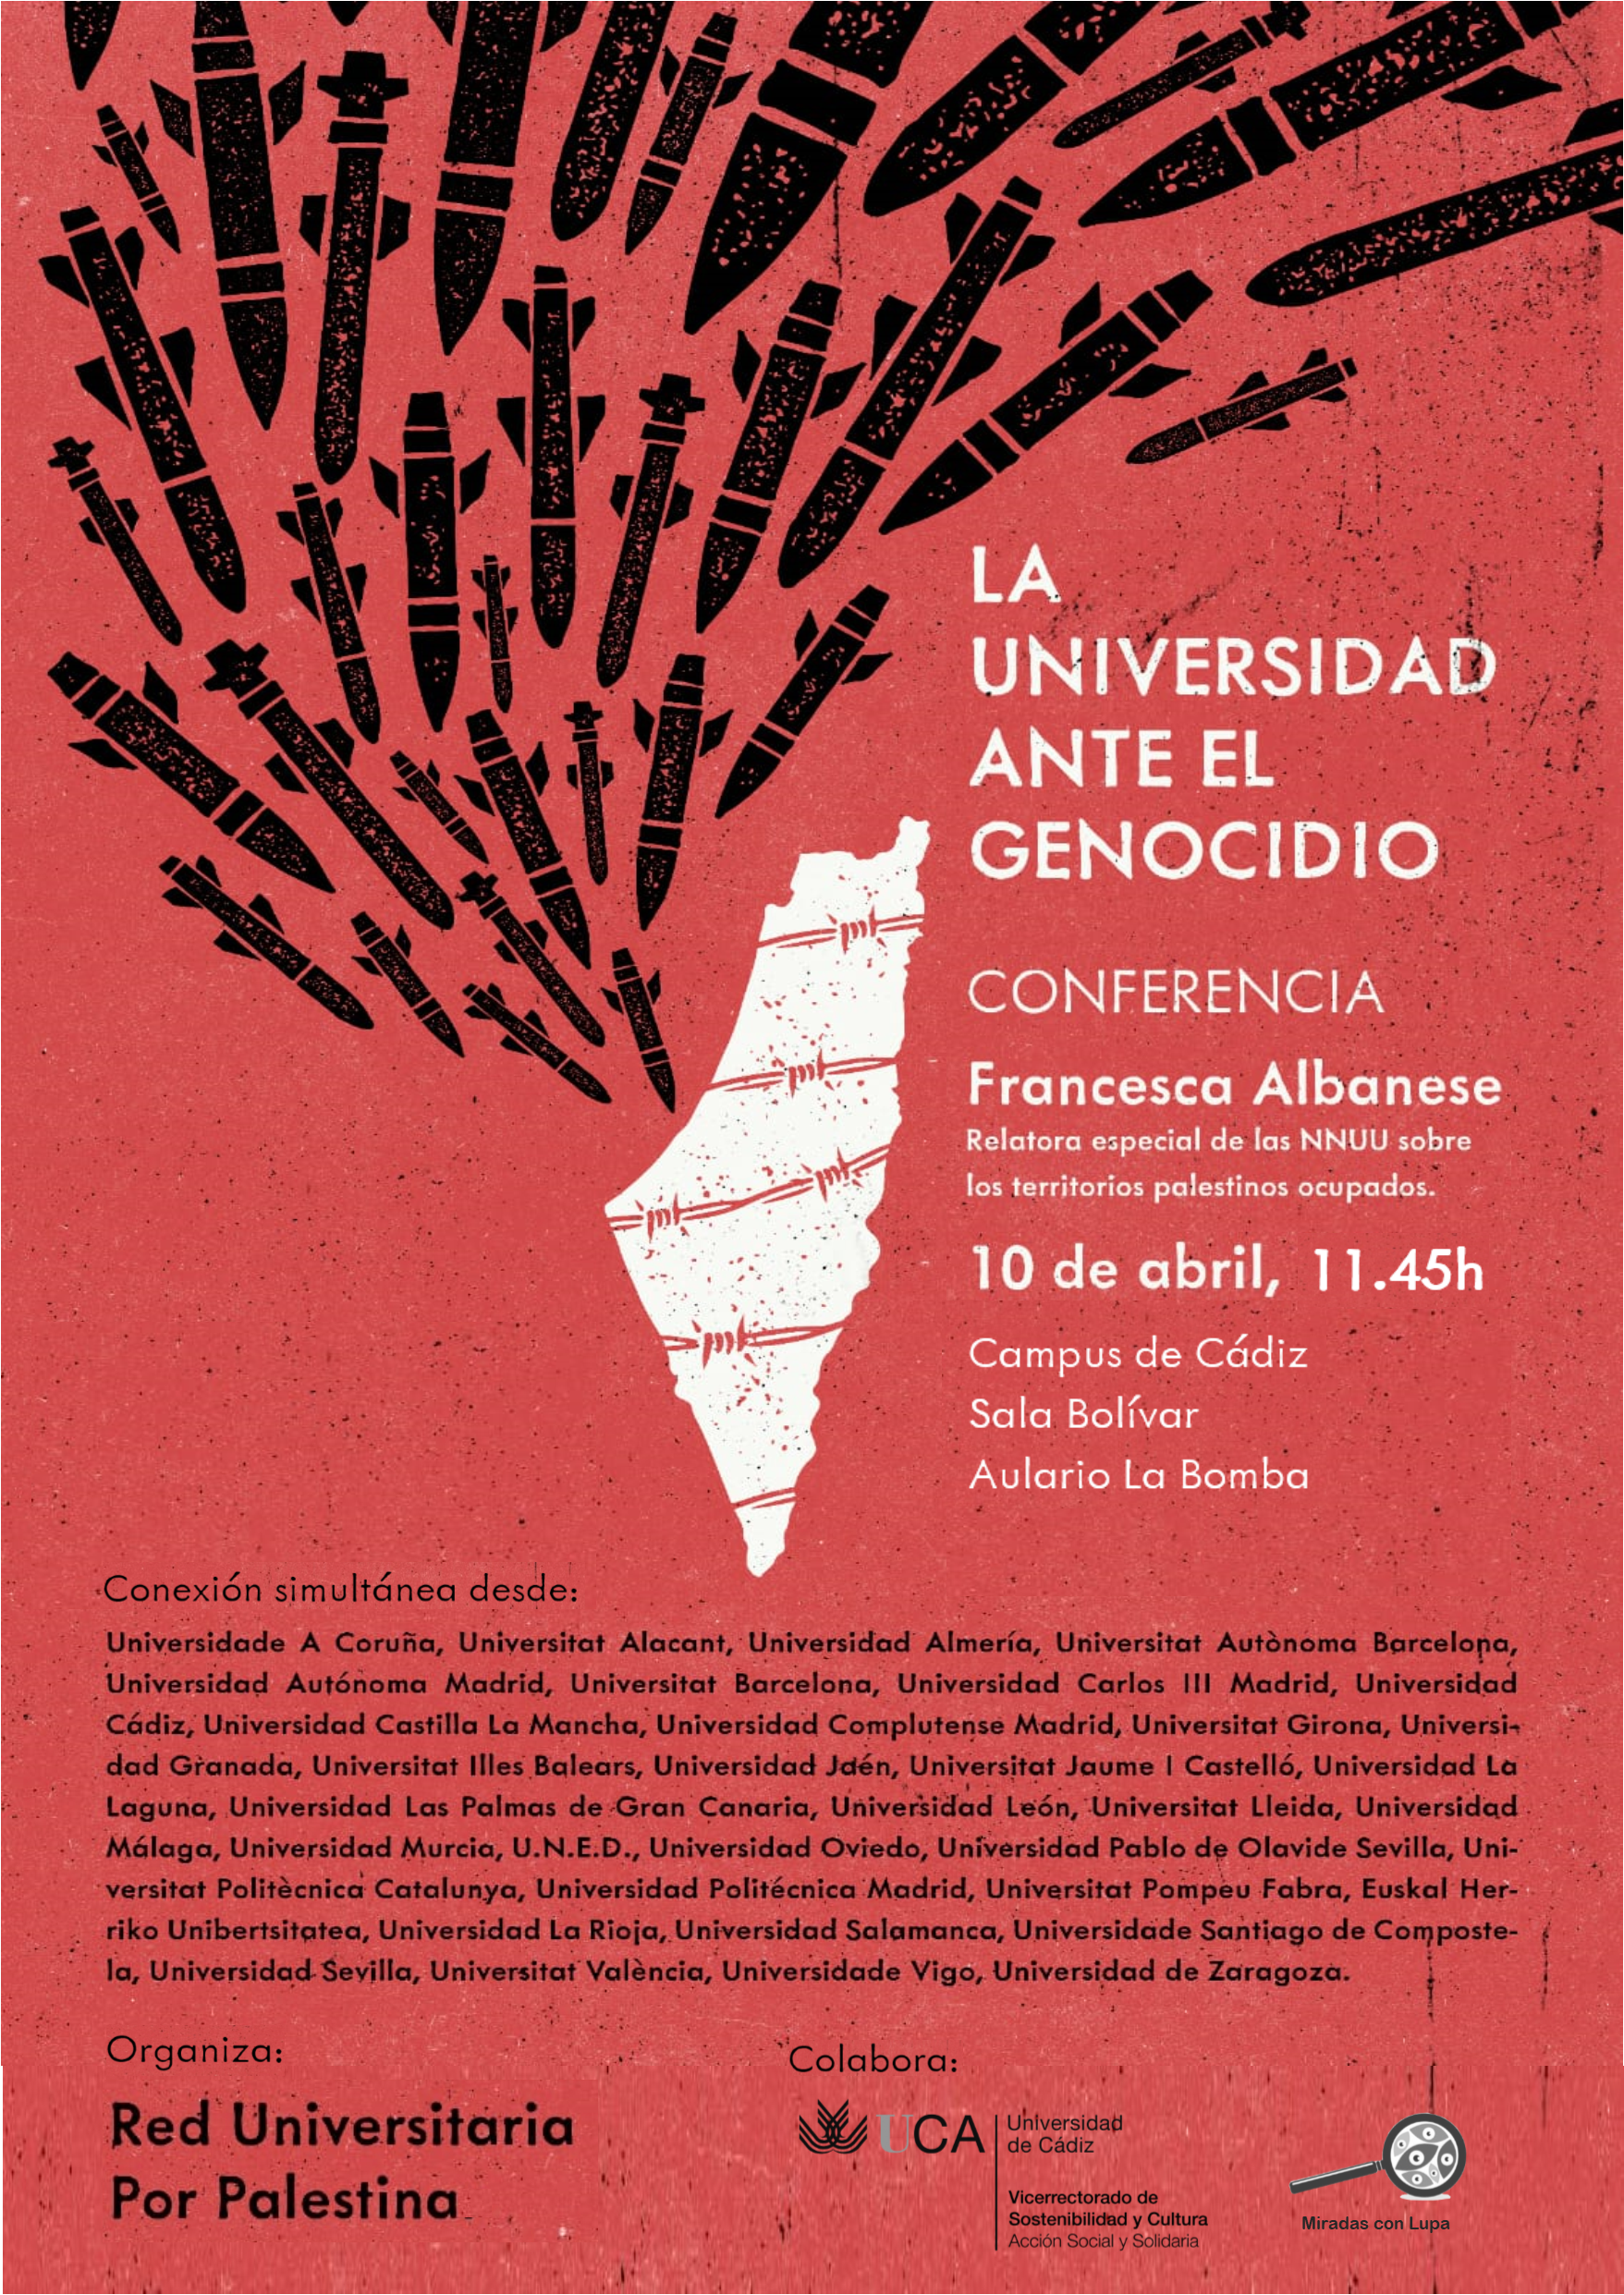 “La universidad ante el genocidio”. Conferencia de Francesca Albanese, Relatora especial de las Naciones Unidas sobre los territorios palestinos ocupados.